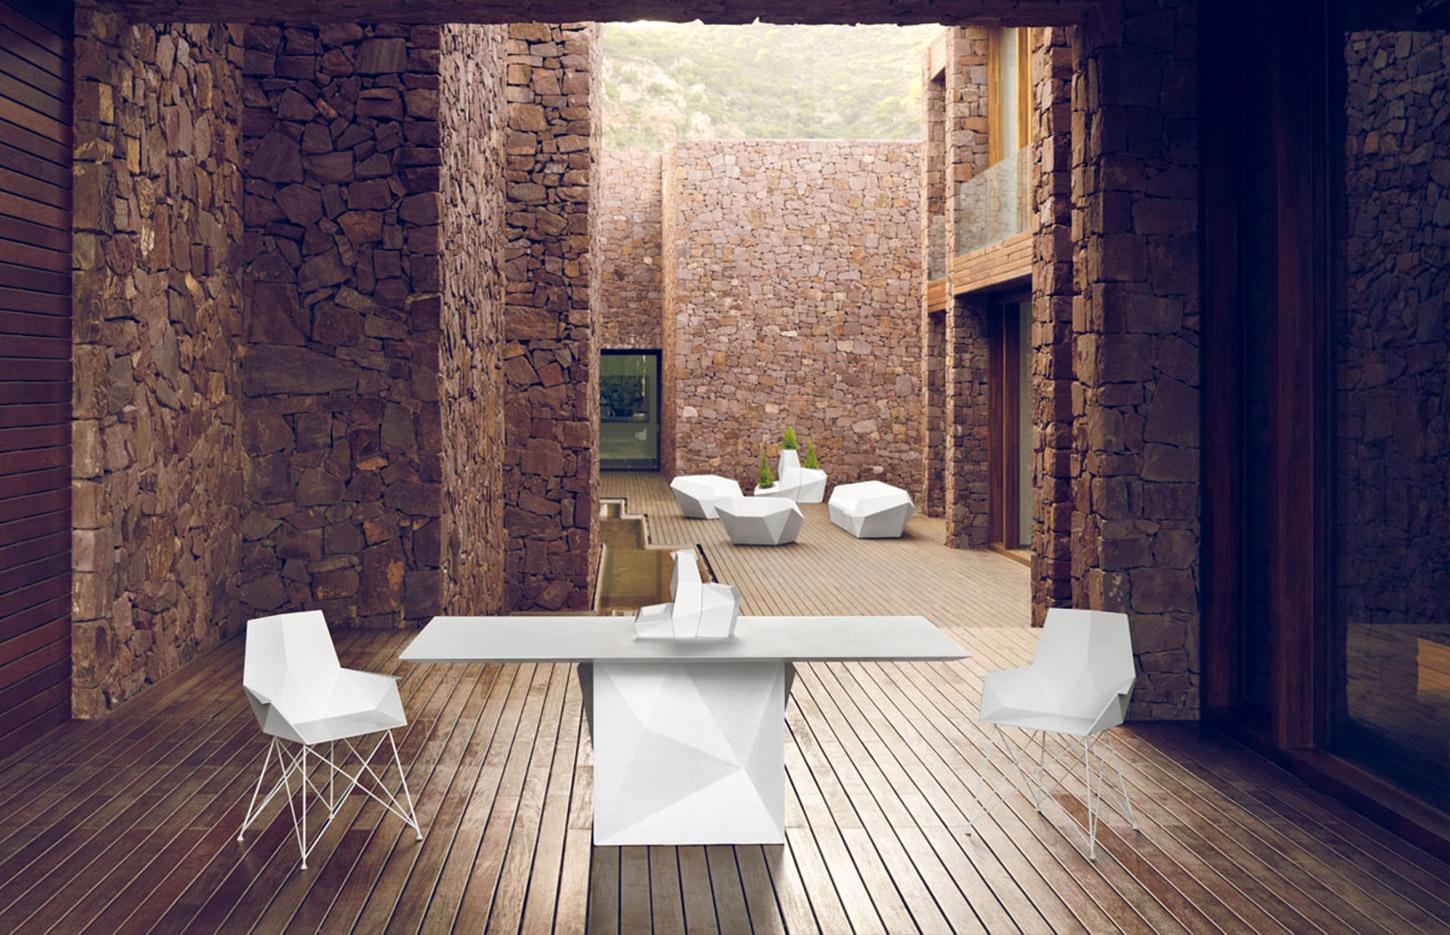 Table et chaise d\'extérieur ronde, carrée ou rectangulaire, gamme Lena - France Bureau